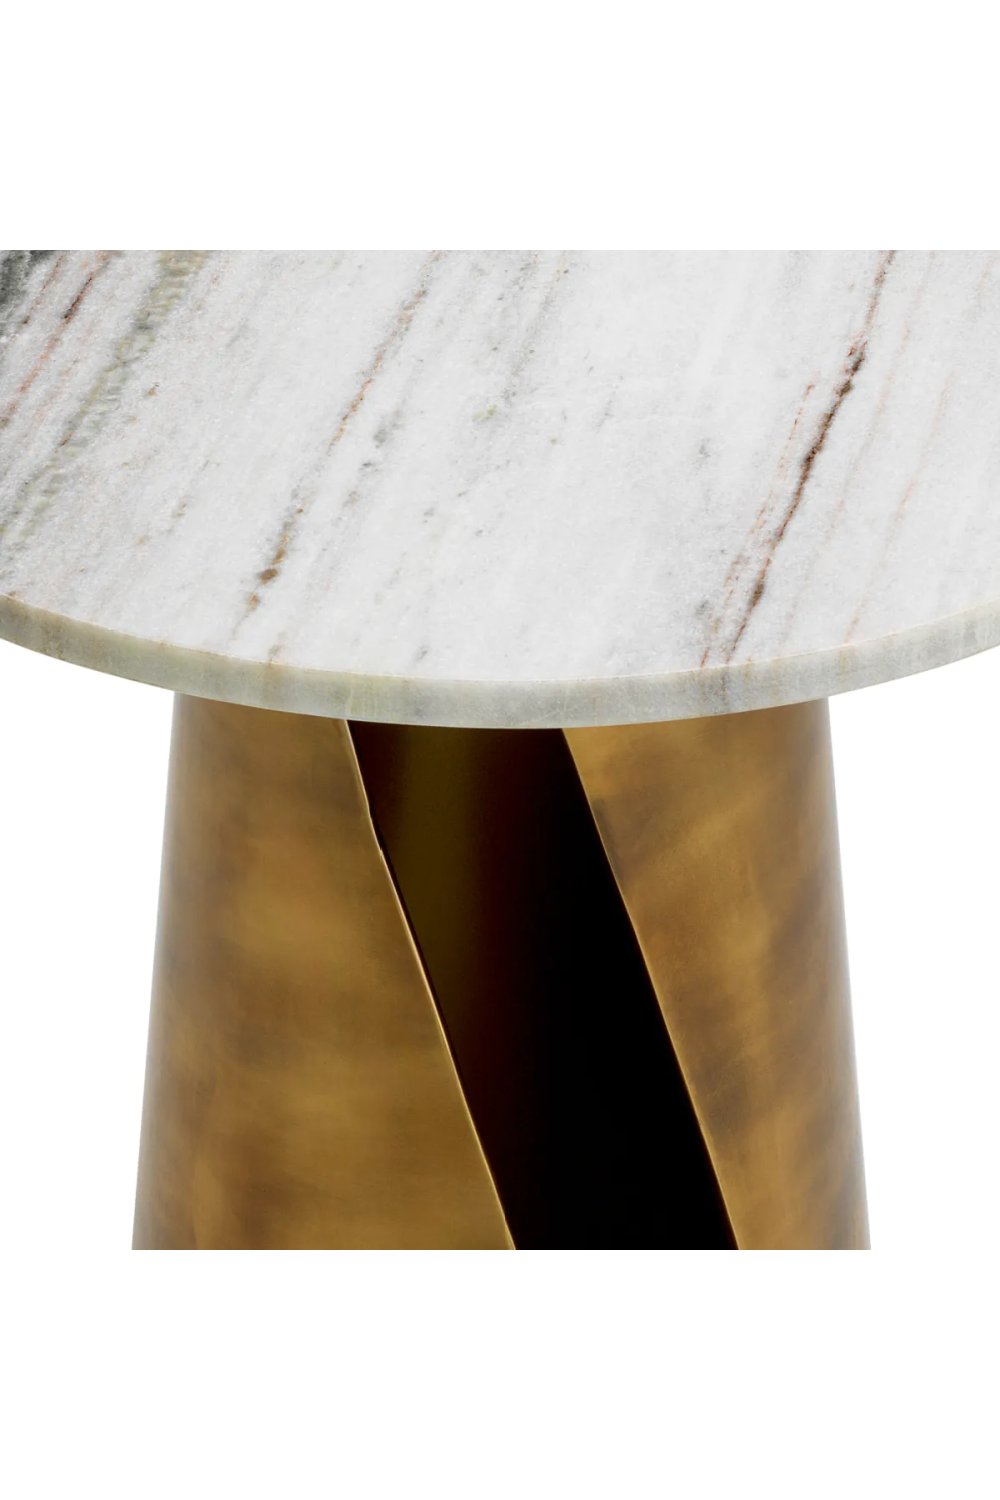 White Marble Side Table | Eichholtz Nuova | Oroa.com